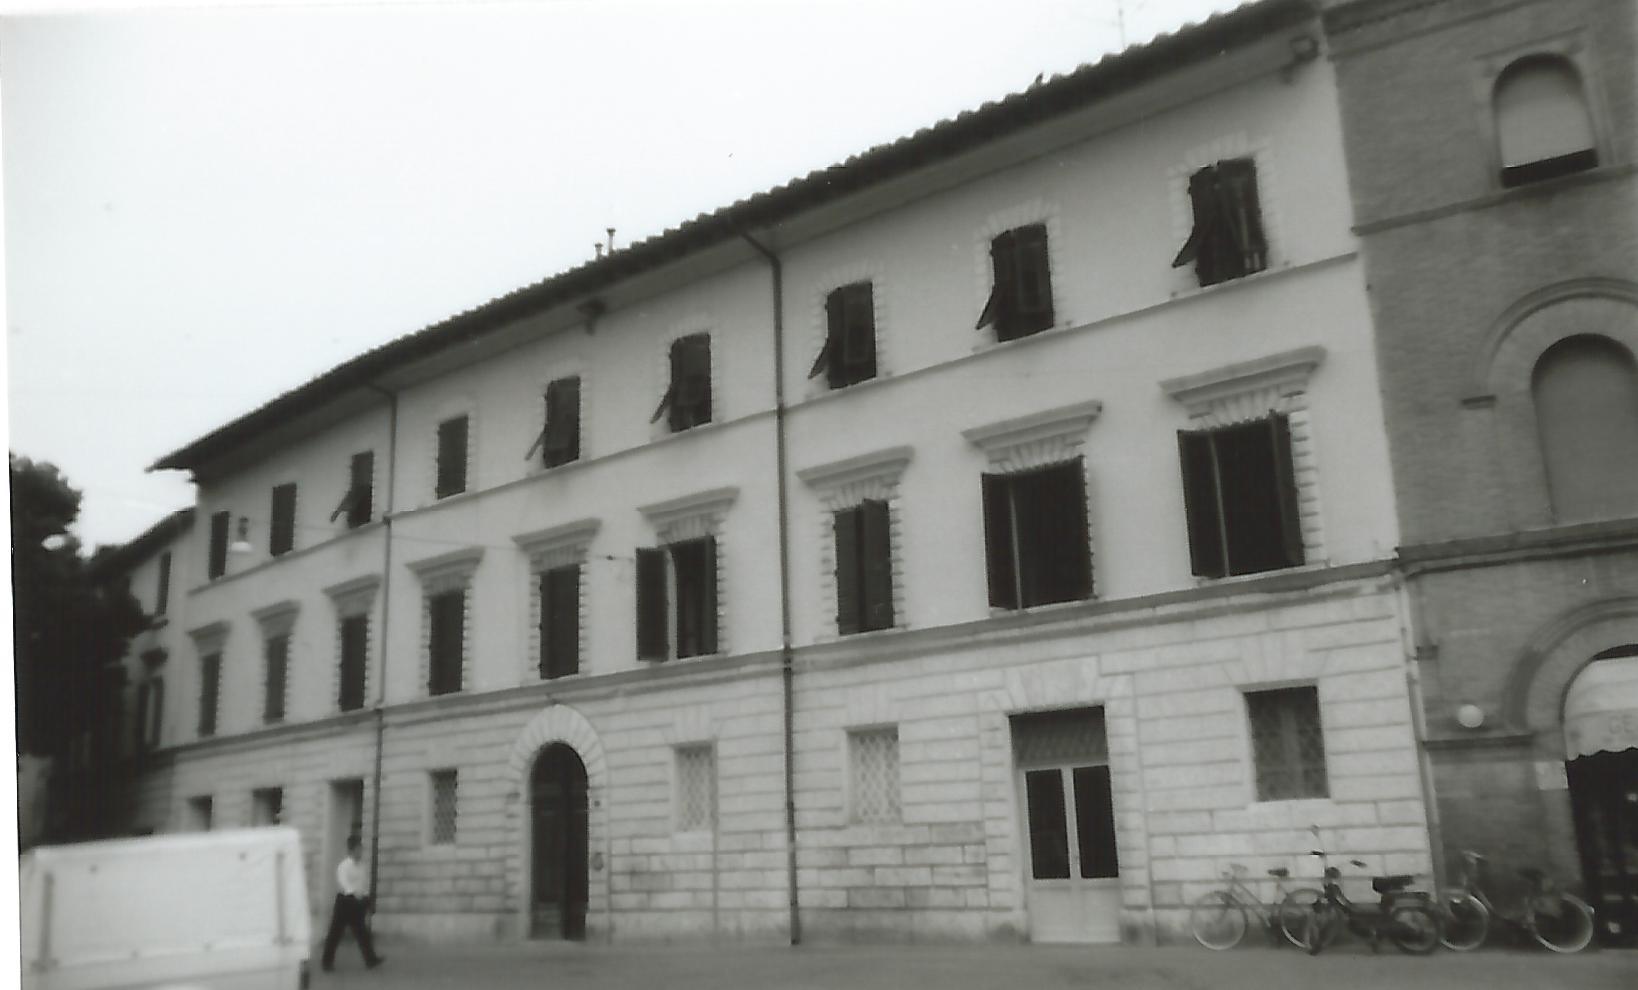 Palazzo ottocentesco in via Garibaldi (palazzo, signorile) - Grosseto (GR)  (XIX, seconda metà)